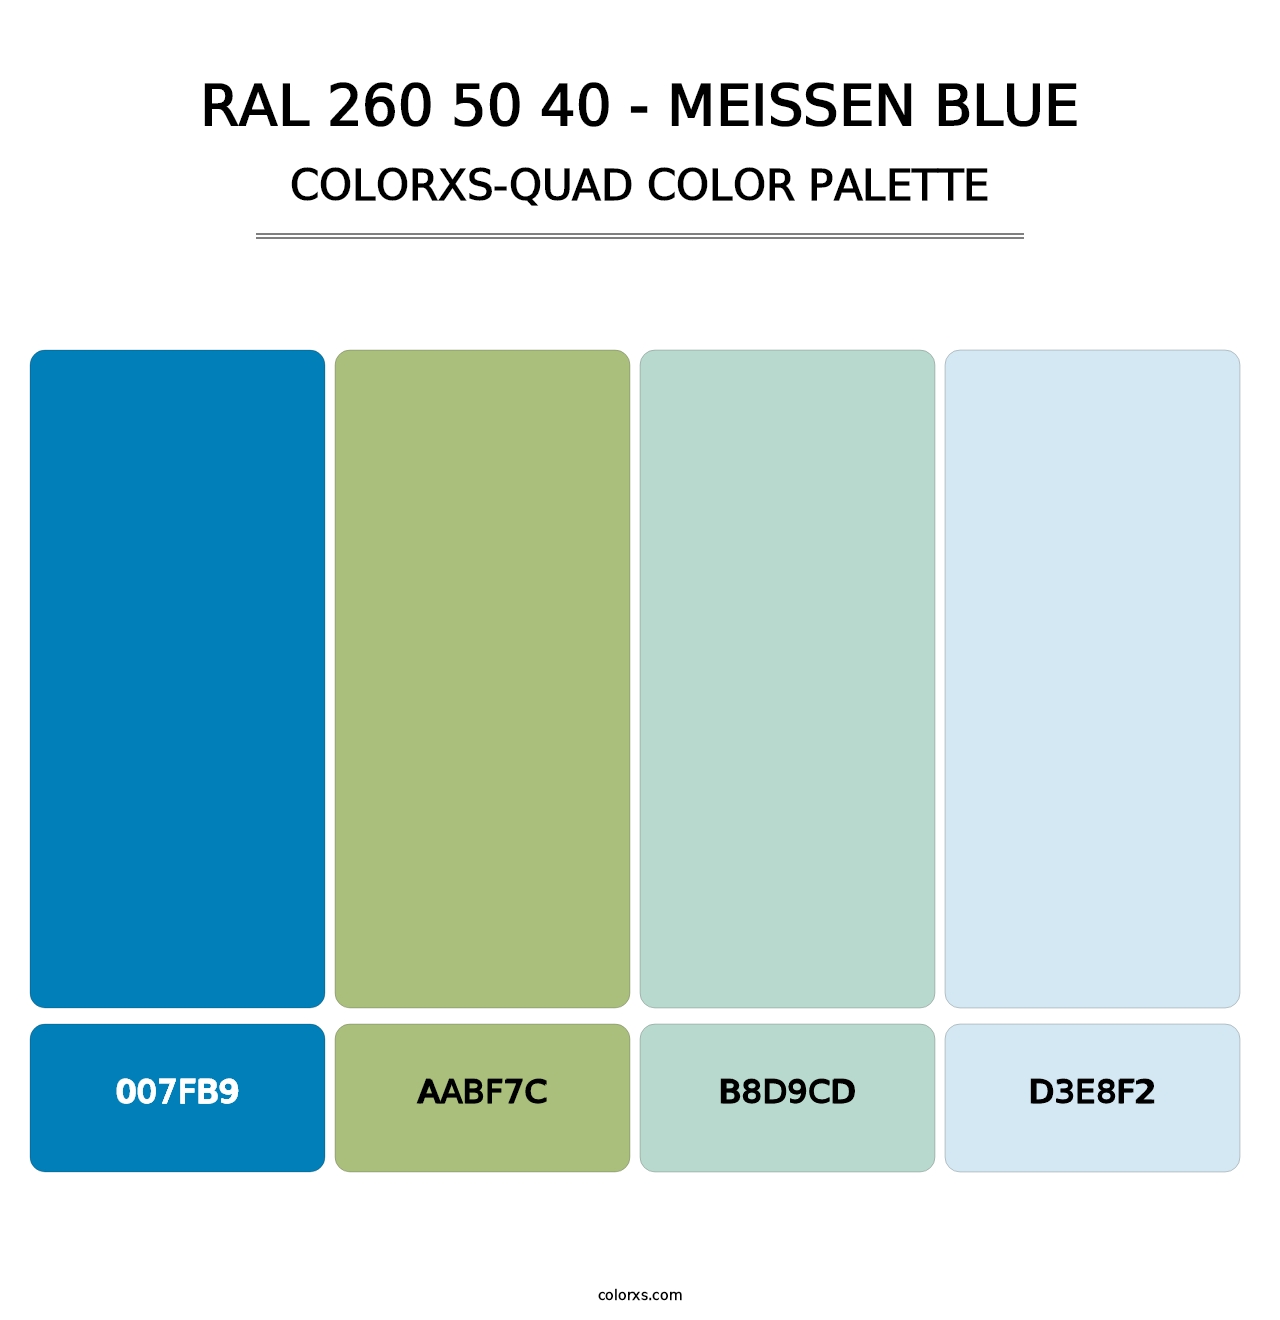 RAL 260 50 40 - Meissen Blue - Colorxs Quad Palette